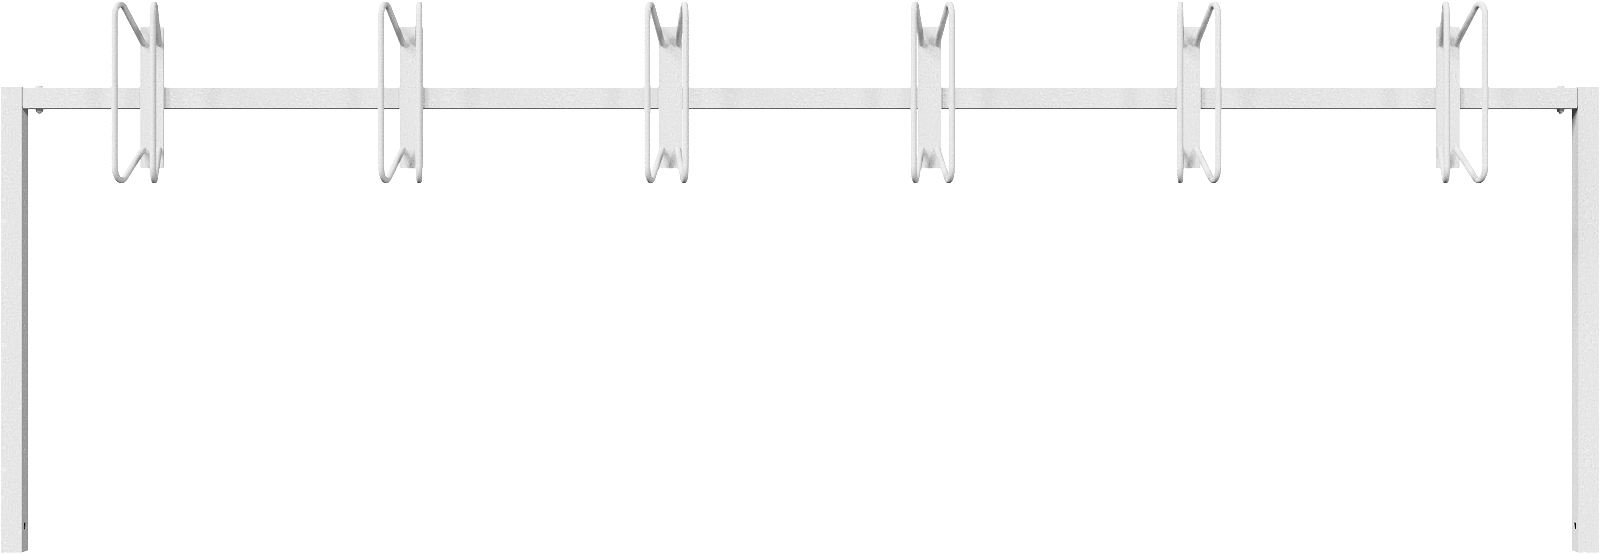 Modellbeispiel: Fahrradständer/Reihenparker -Nordstrand- (Art. 421.02)